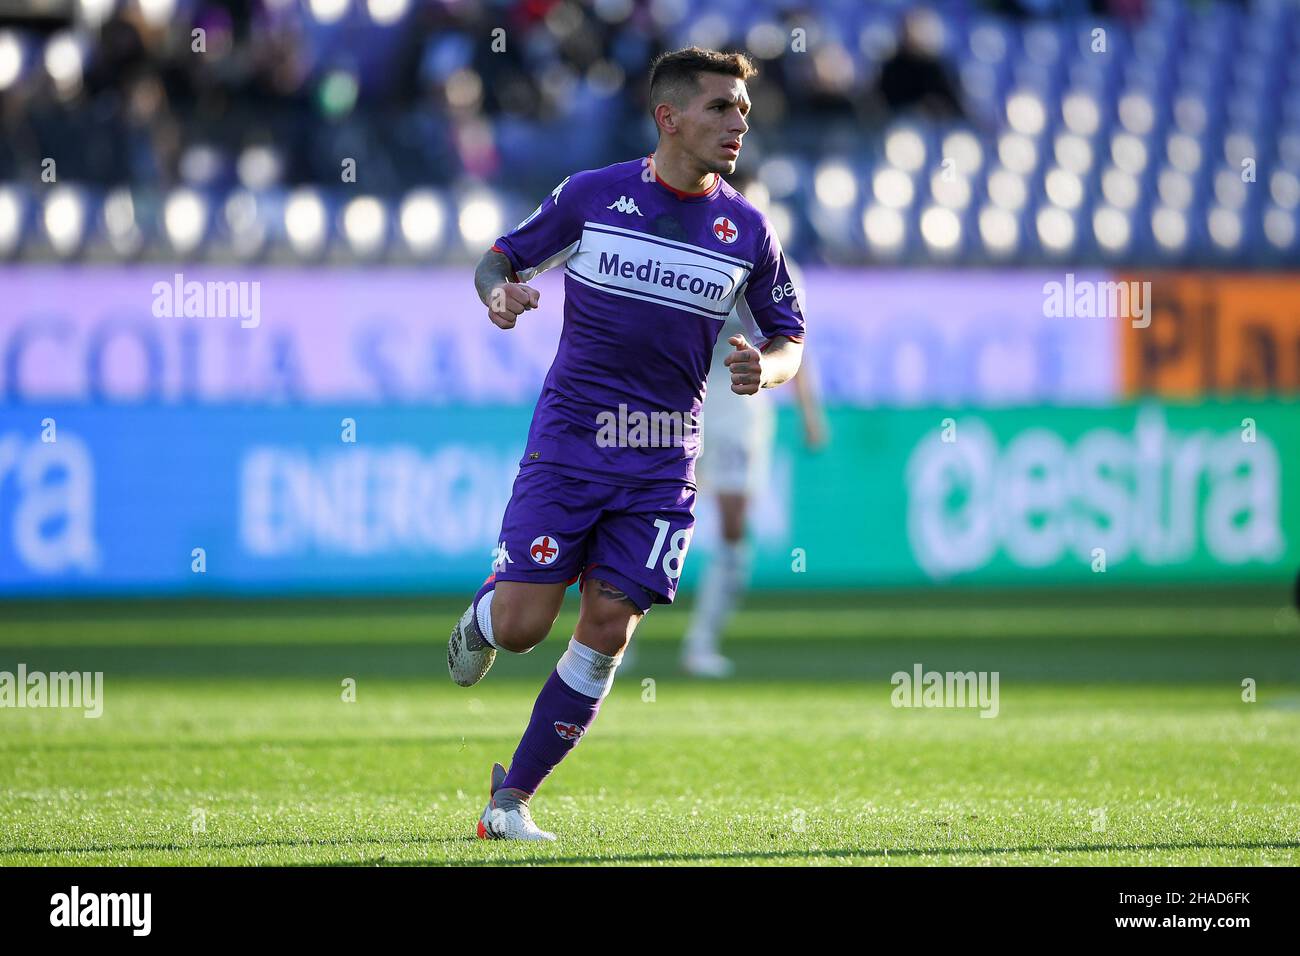 FIRENZE, ITALIA - DICEMBRE 11: Lucas Torreira dell'ACF Fiorentina in azione durante la Serie A match tra ACF Fiorentina e US Salernitana a Stadi Foto Stock